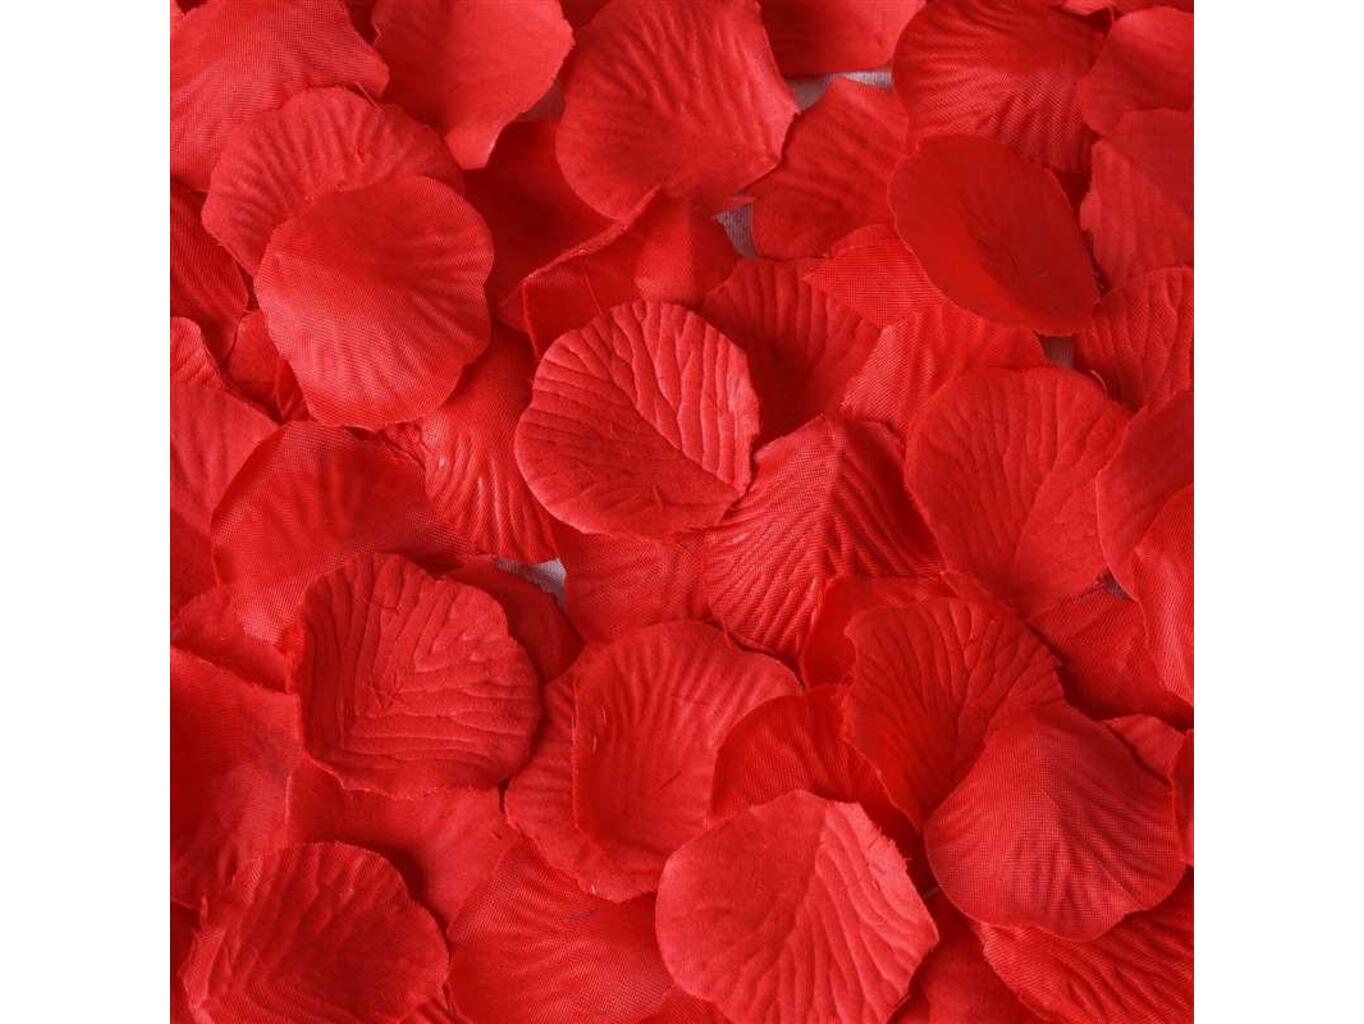 Postel plná růží 150ks Barva: Červená